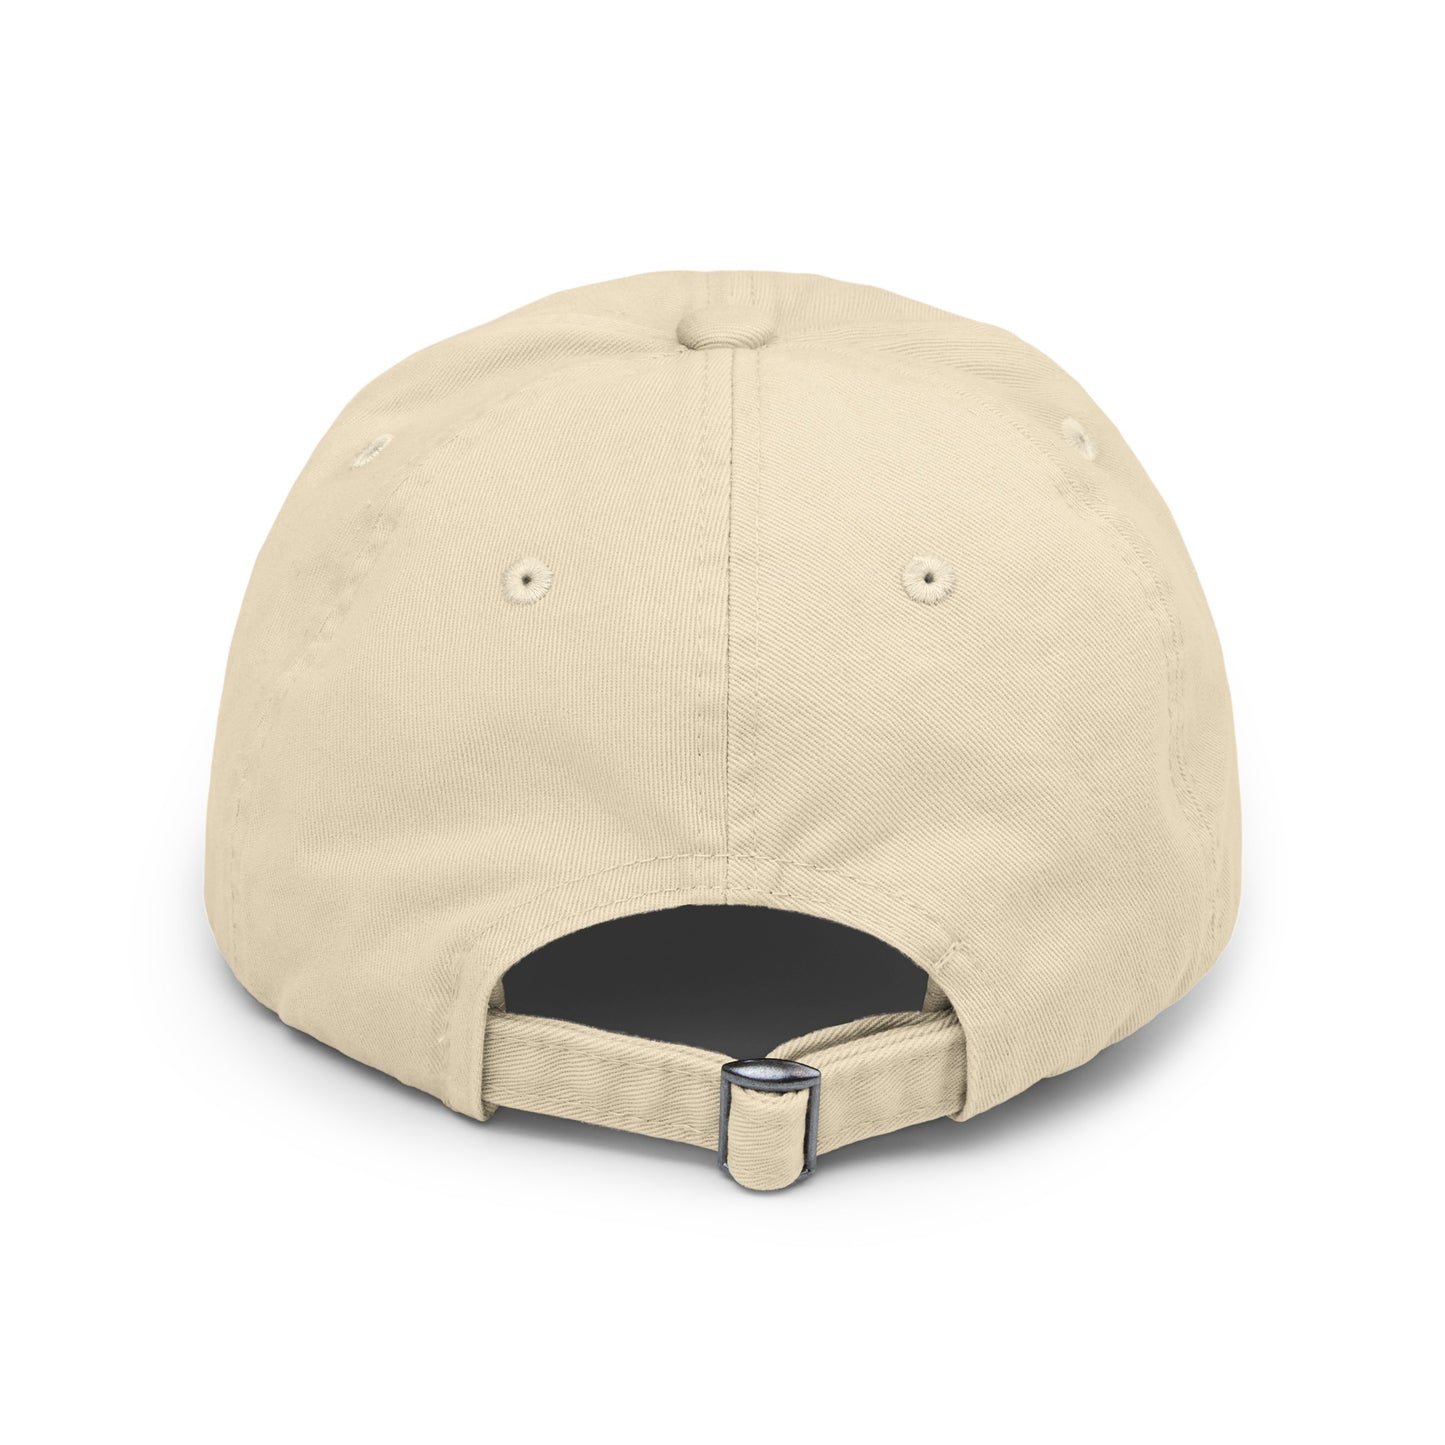 Unisex Graphic design(Spy Wear) Cap